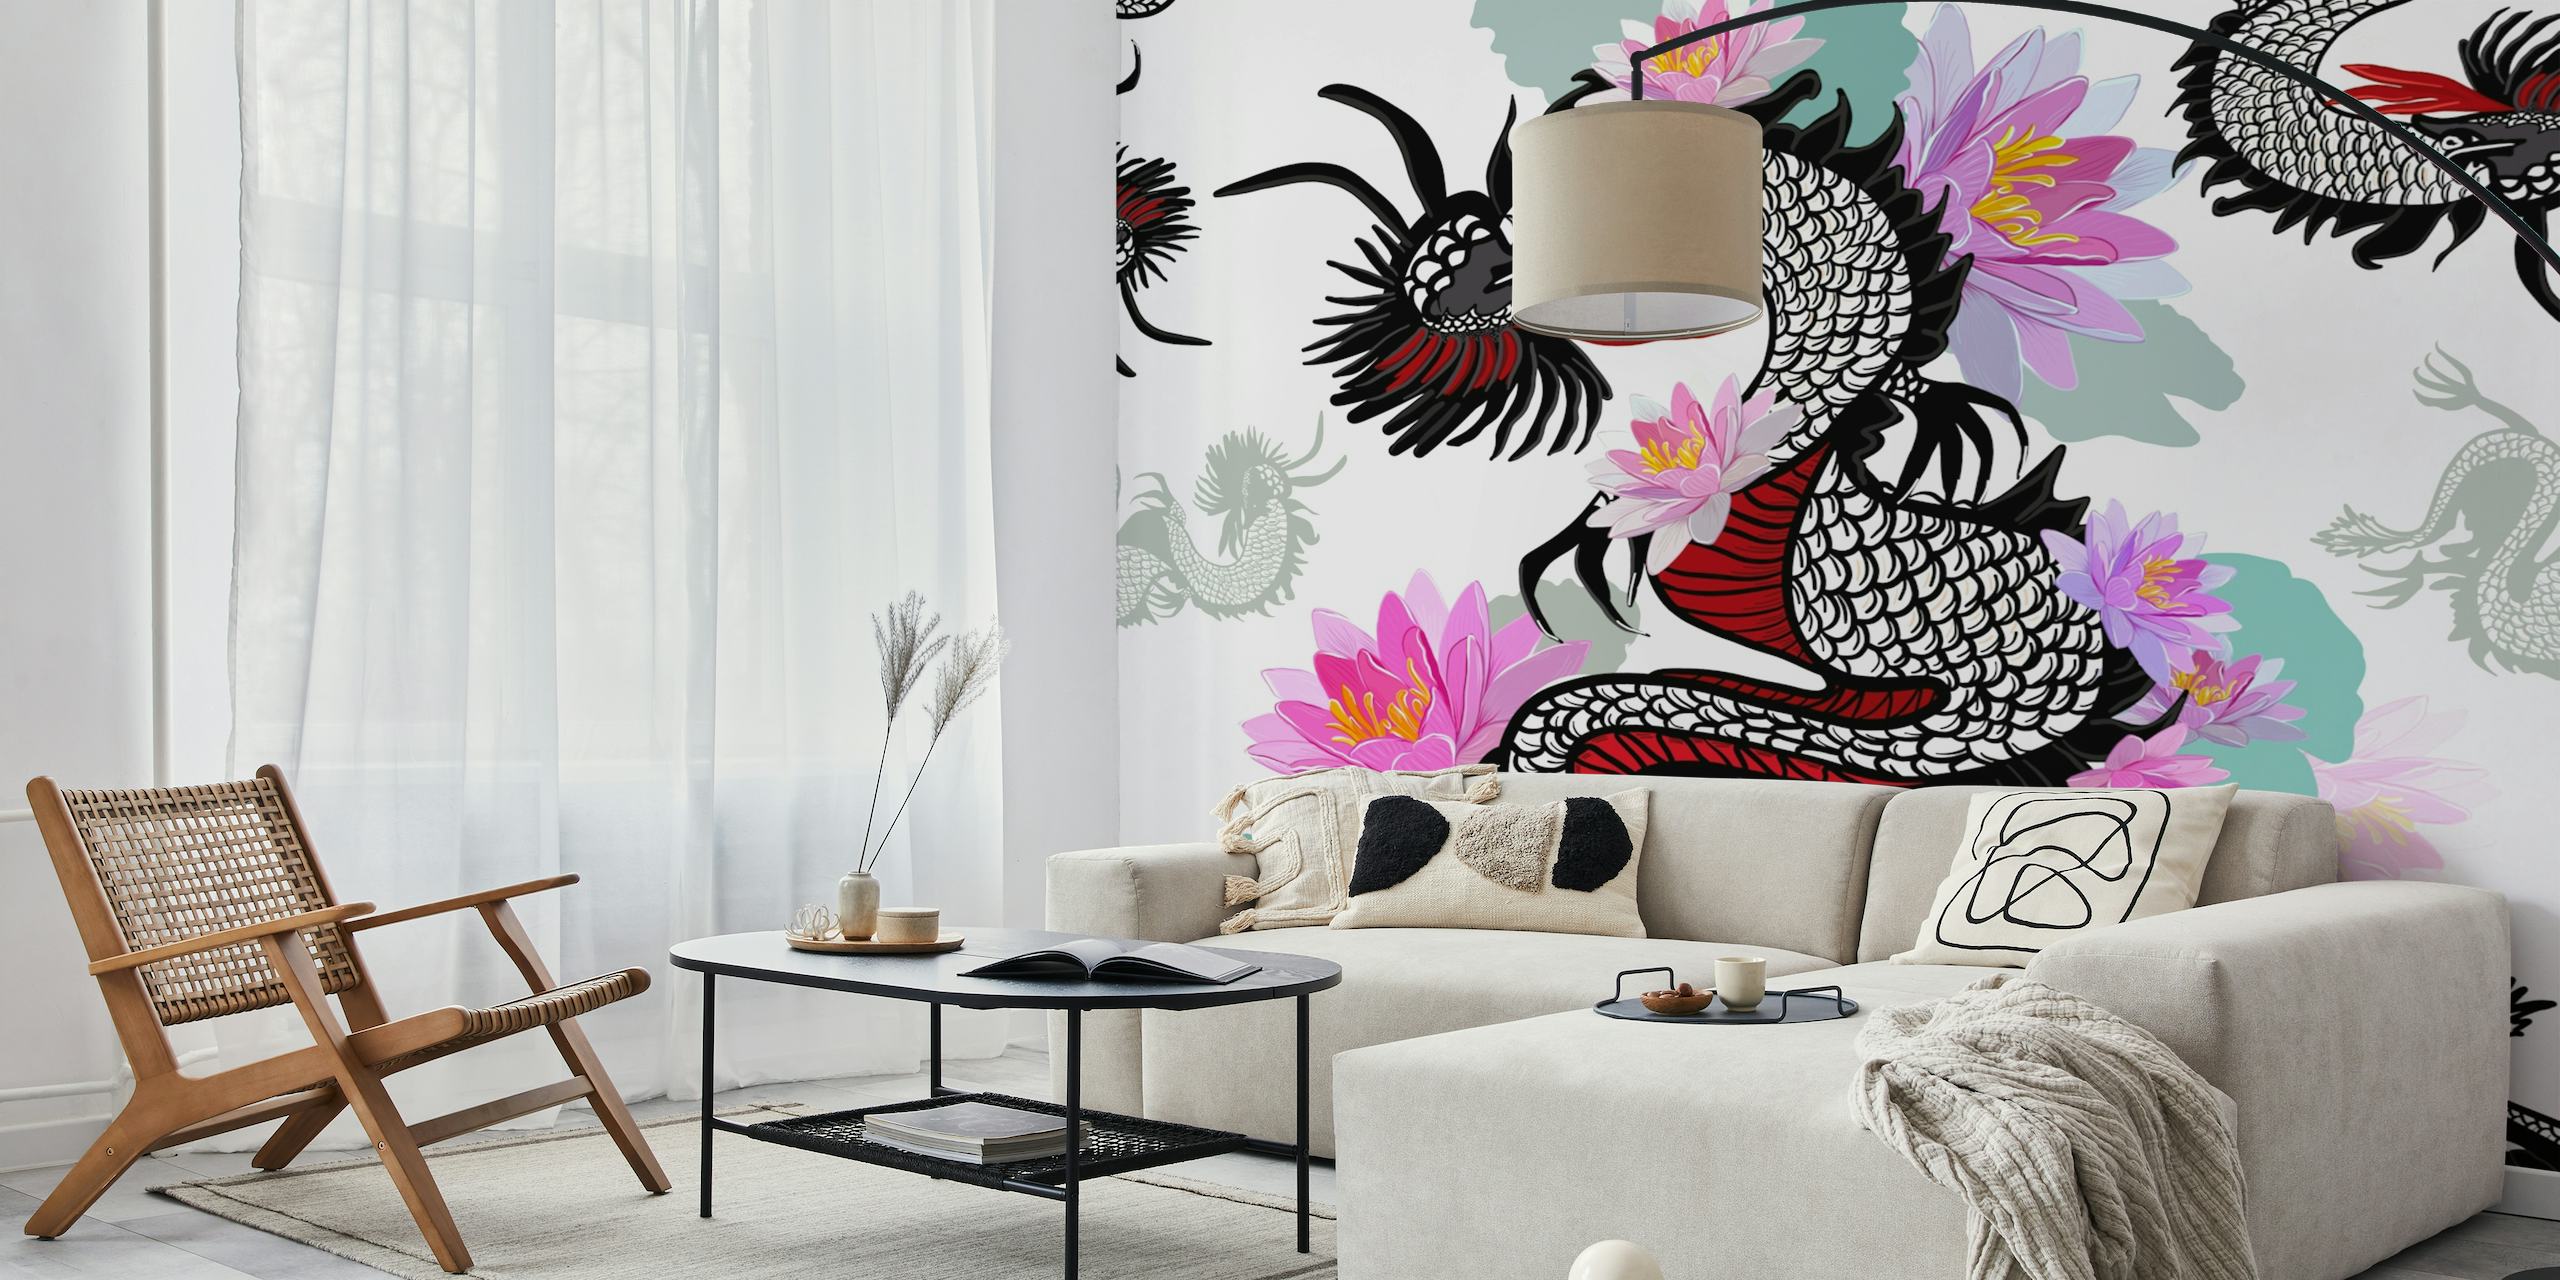 Wandgemälde mit mythischem Drachen und blühendem Lotus